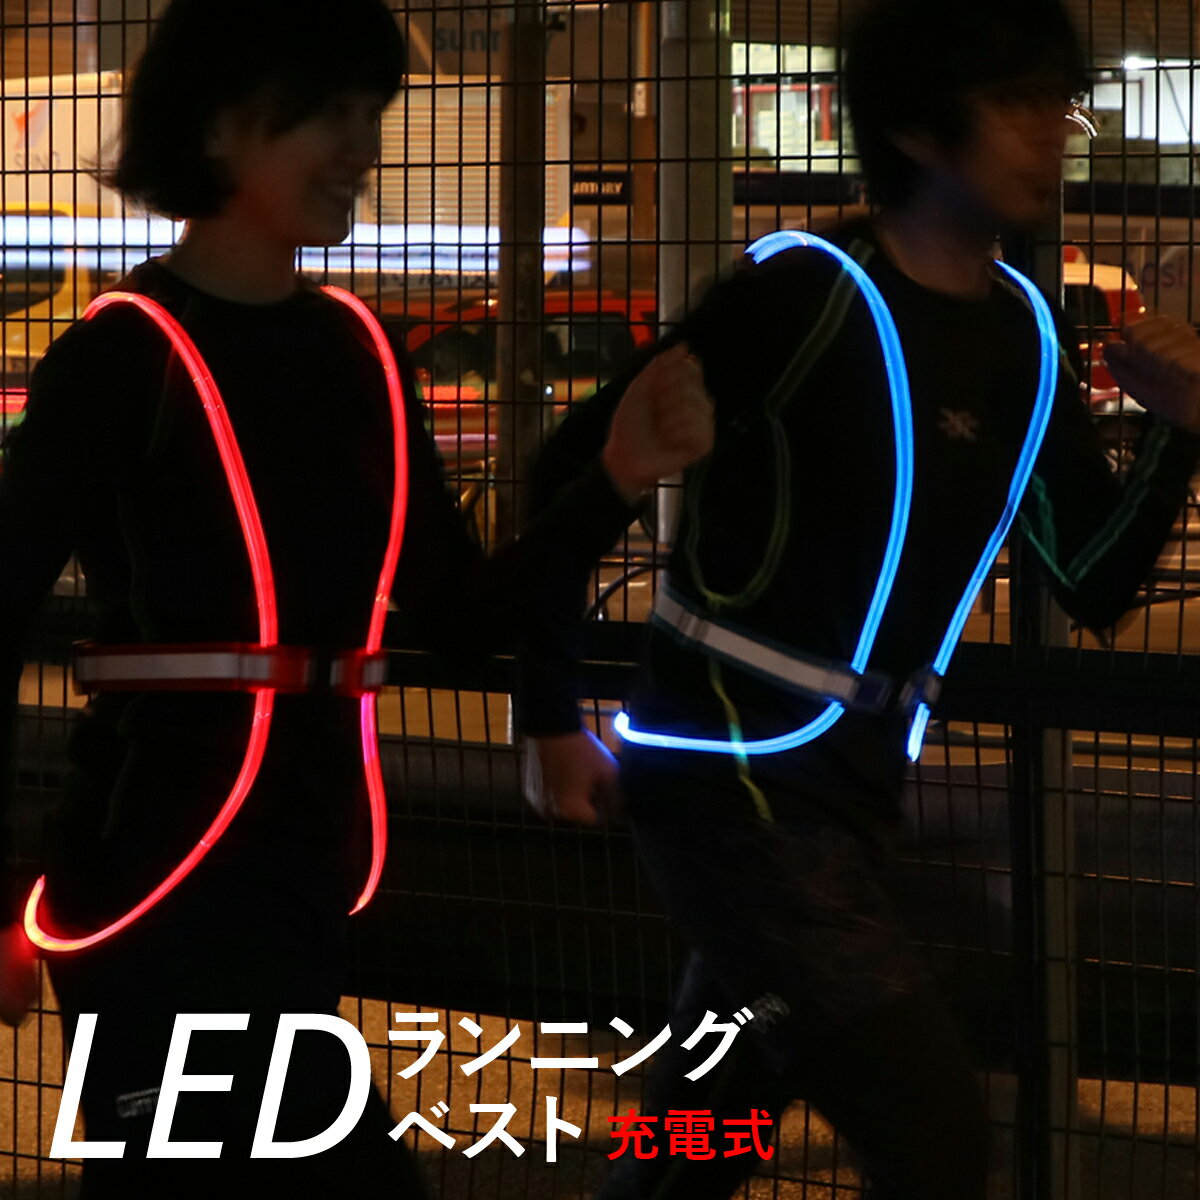 安全ベスト LED 充電式 夜間 ランニング ウォーキング 視認性 安全 安心 サイクリング 宅配 配送 犬の散歩 ウーバーイーツ フードデリバリー LEDファイバー LEDチューブ ライト